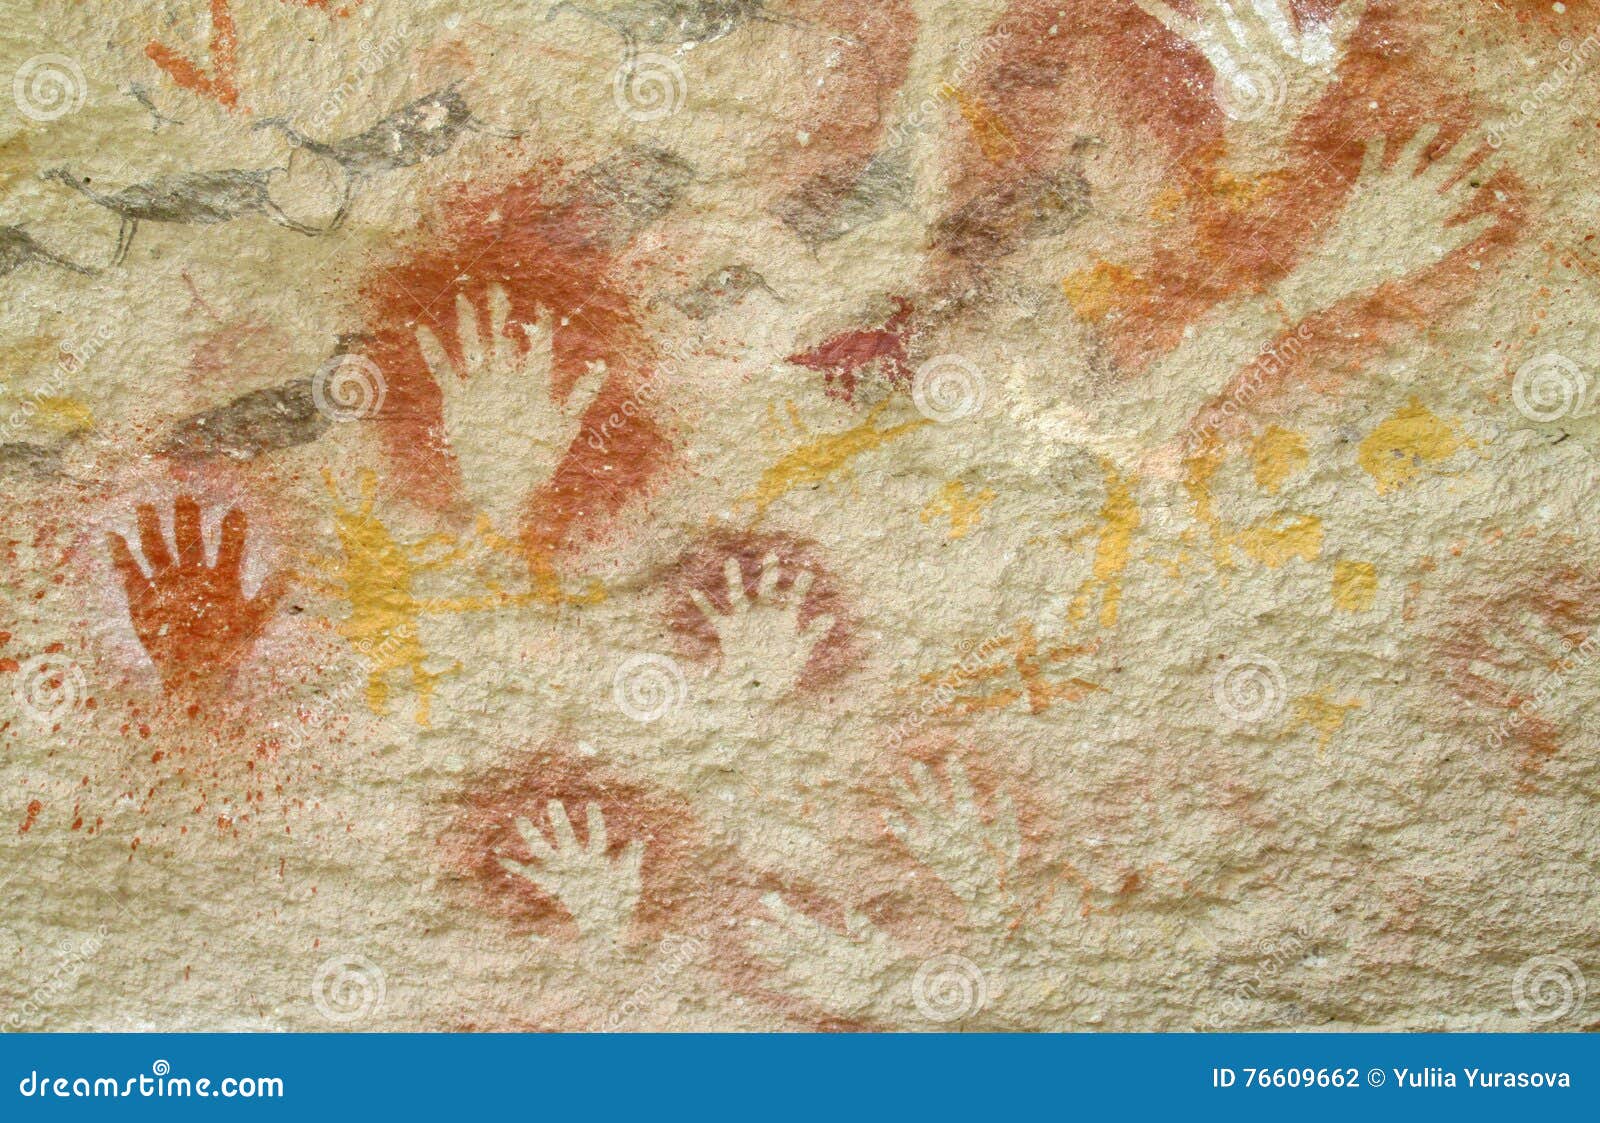 hand prints on a cave wall cueva de las manos